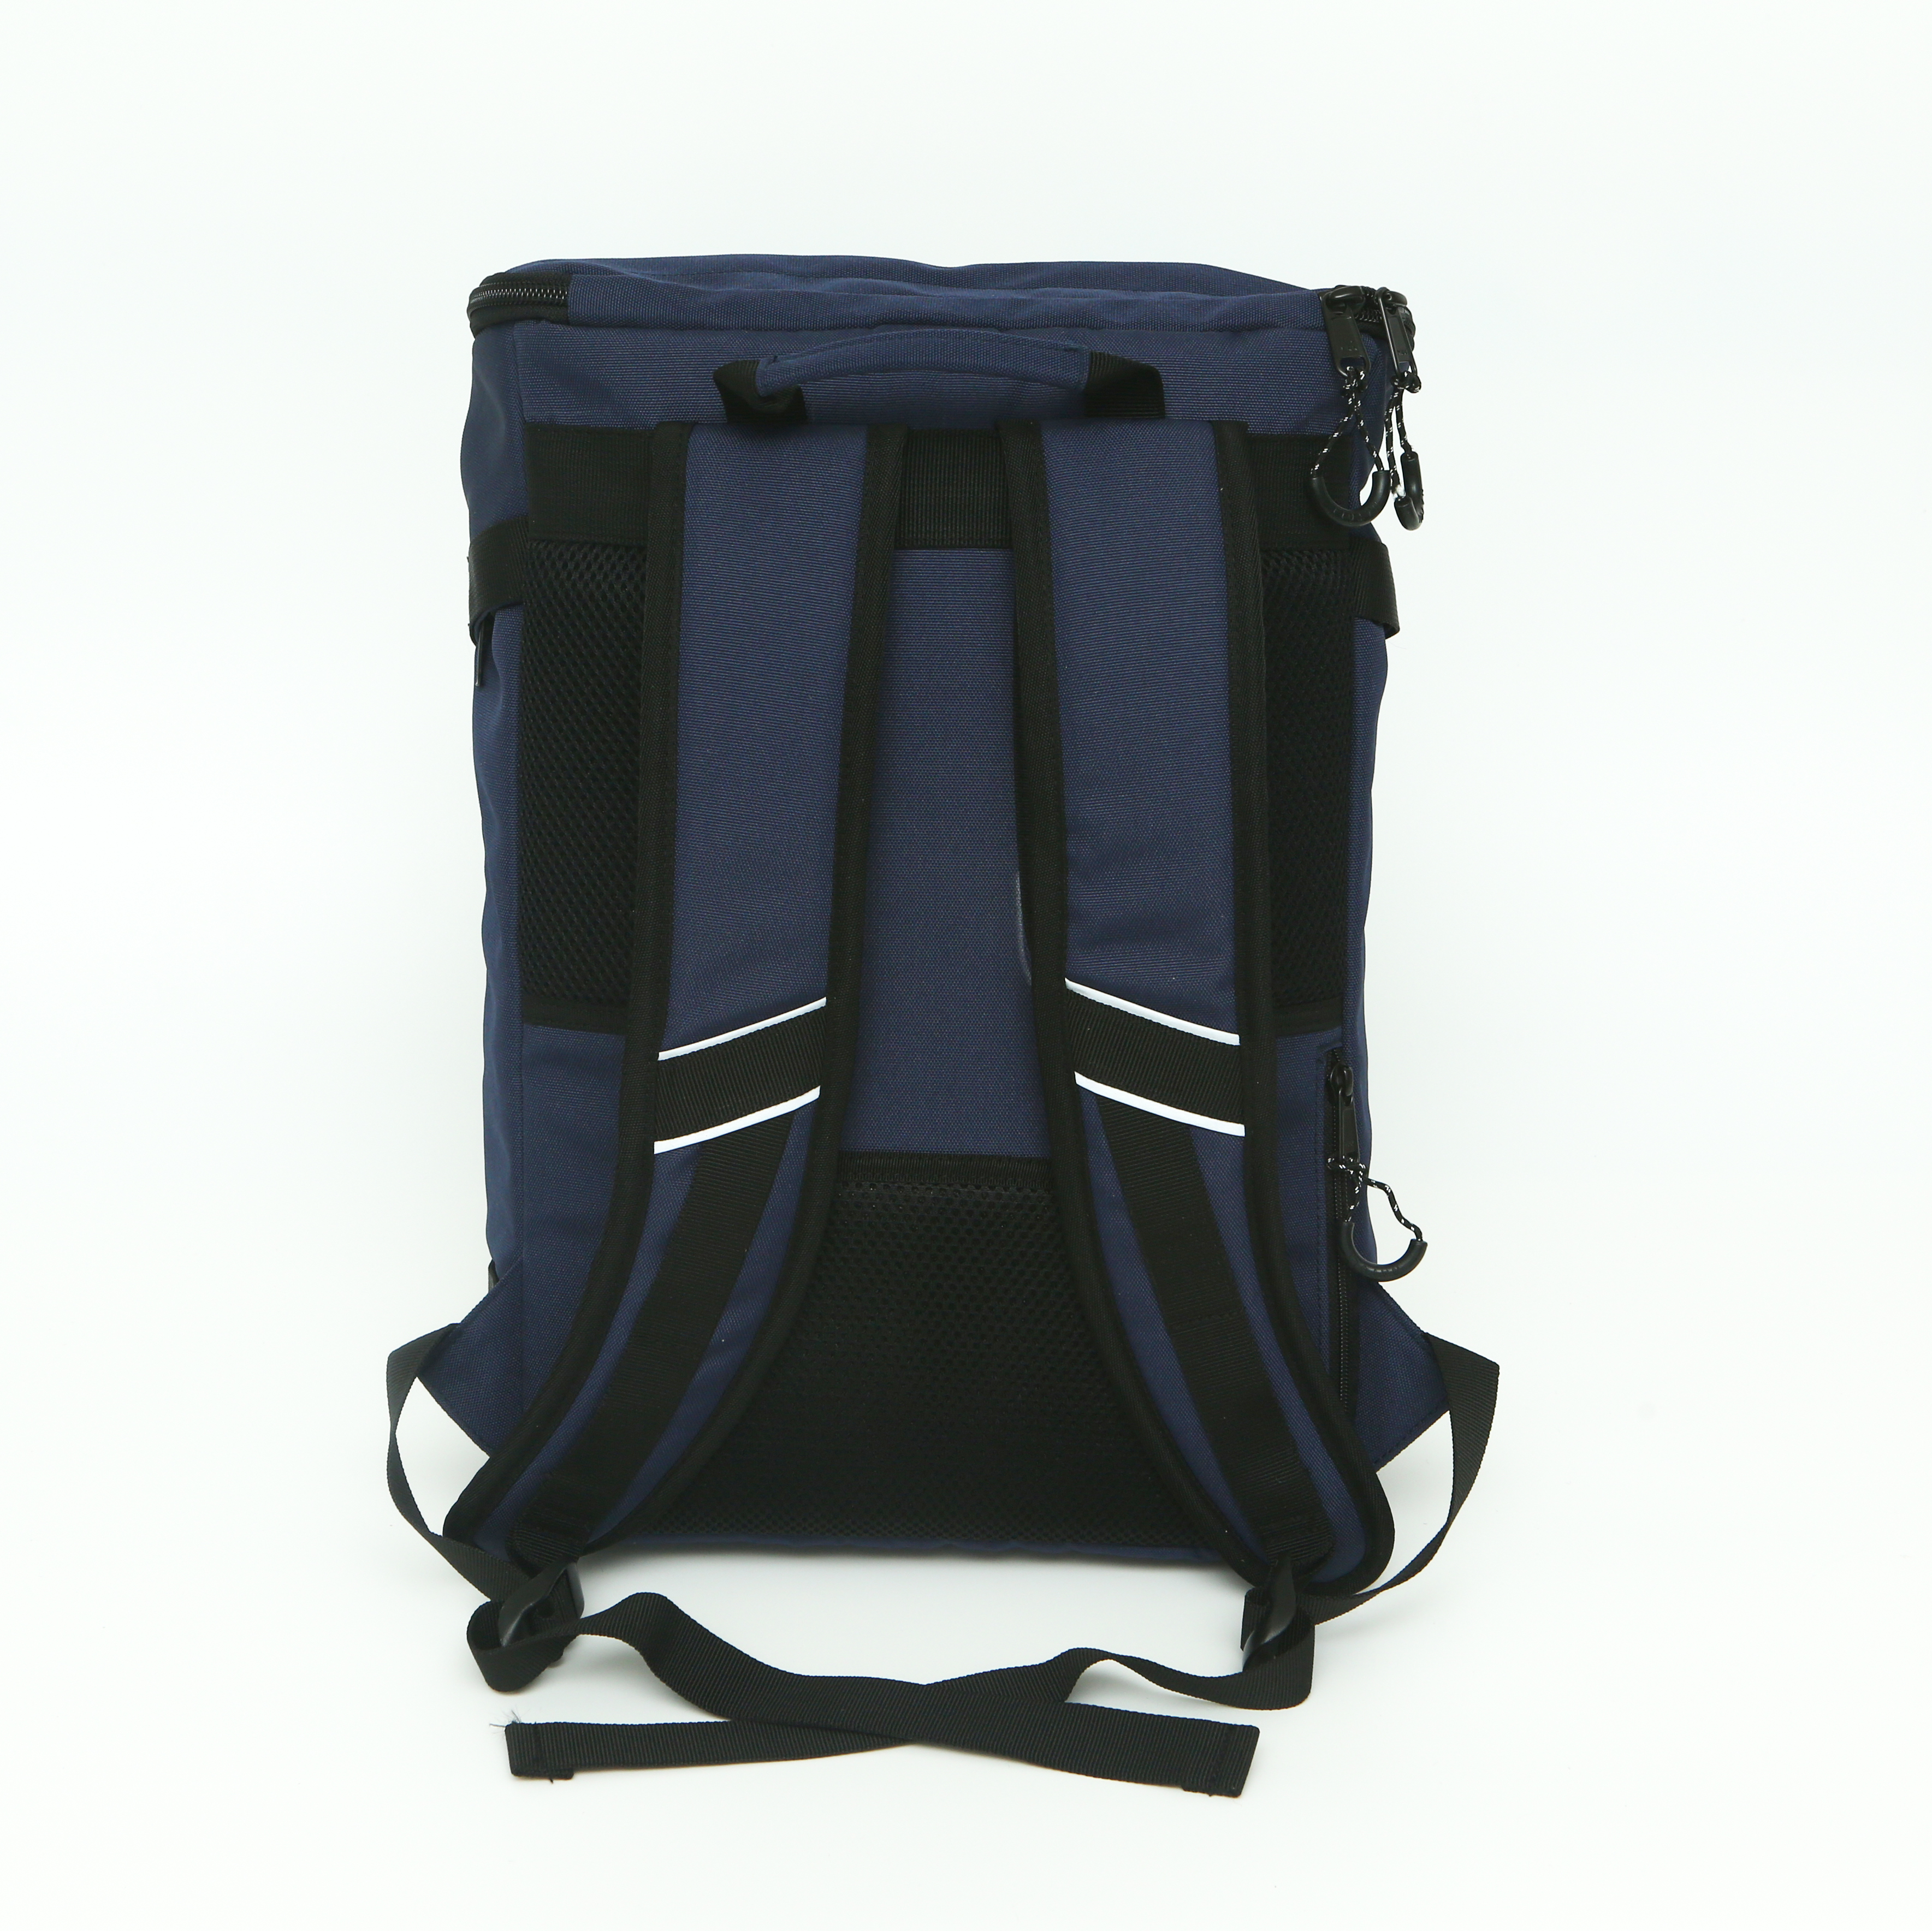 Balo du lịch chính hãng NATOLI BST Discovery Backpack thời trang kháng nước cao cấp